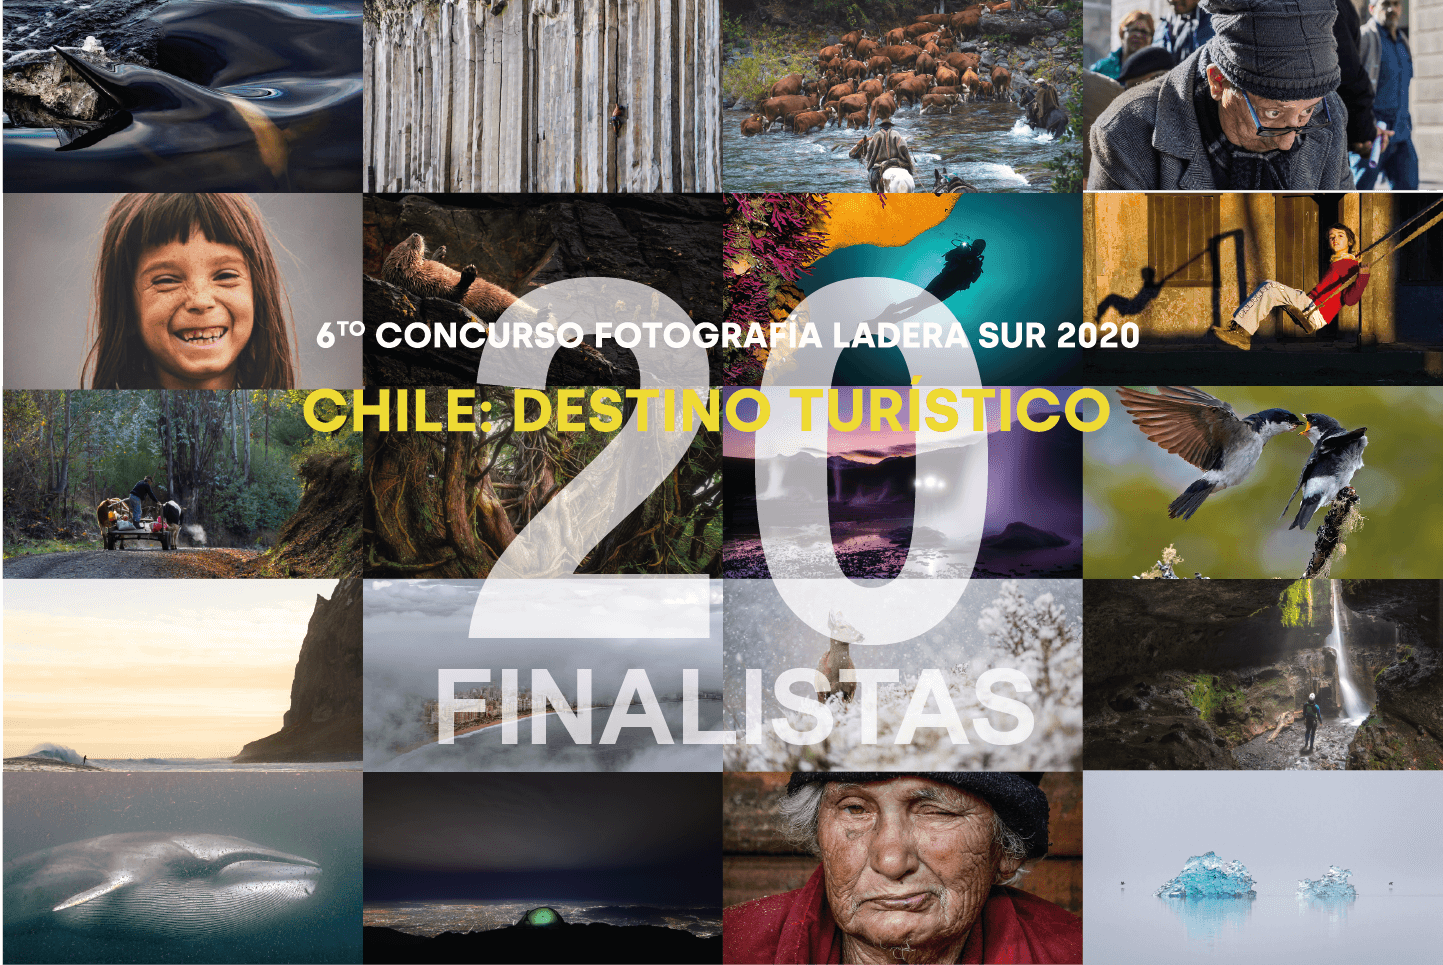 ¡Todos a votar! Las 20 mejores fotos del concurso “Chile: destino turístico” 2020